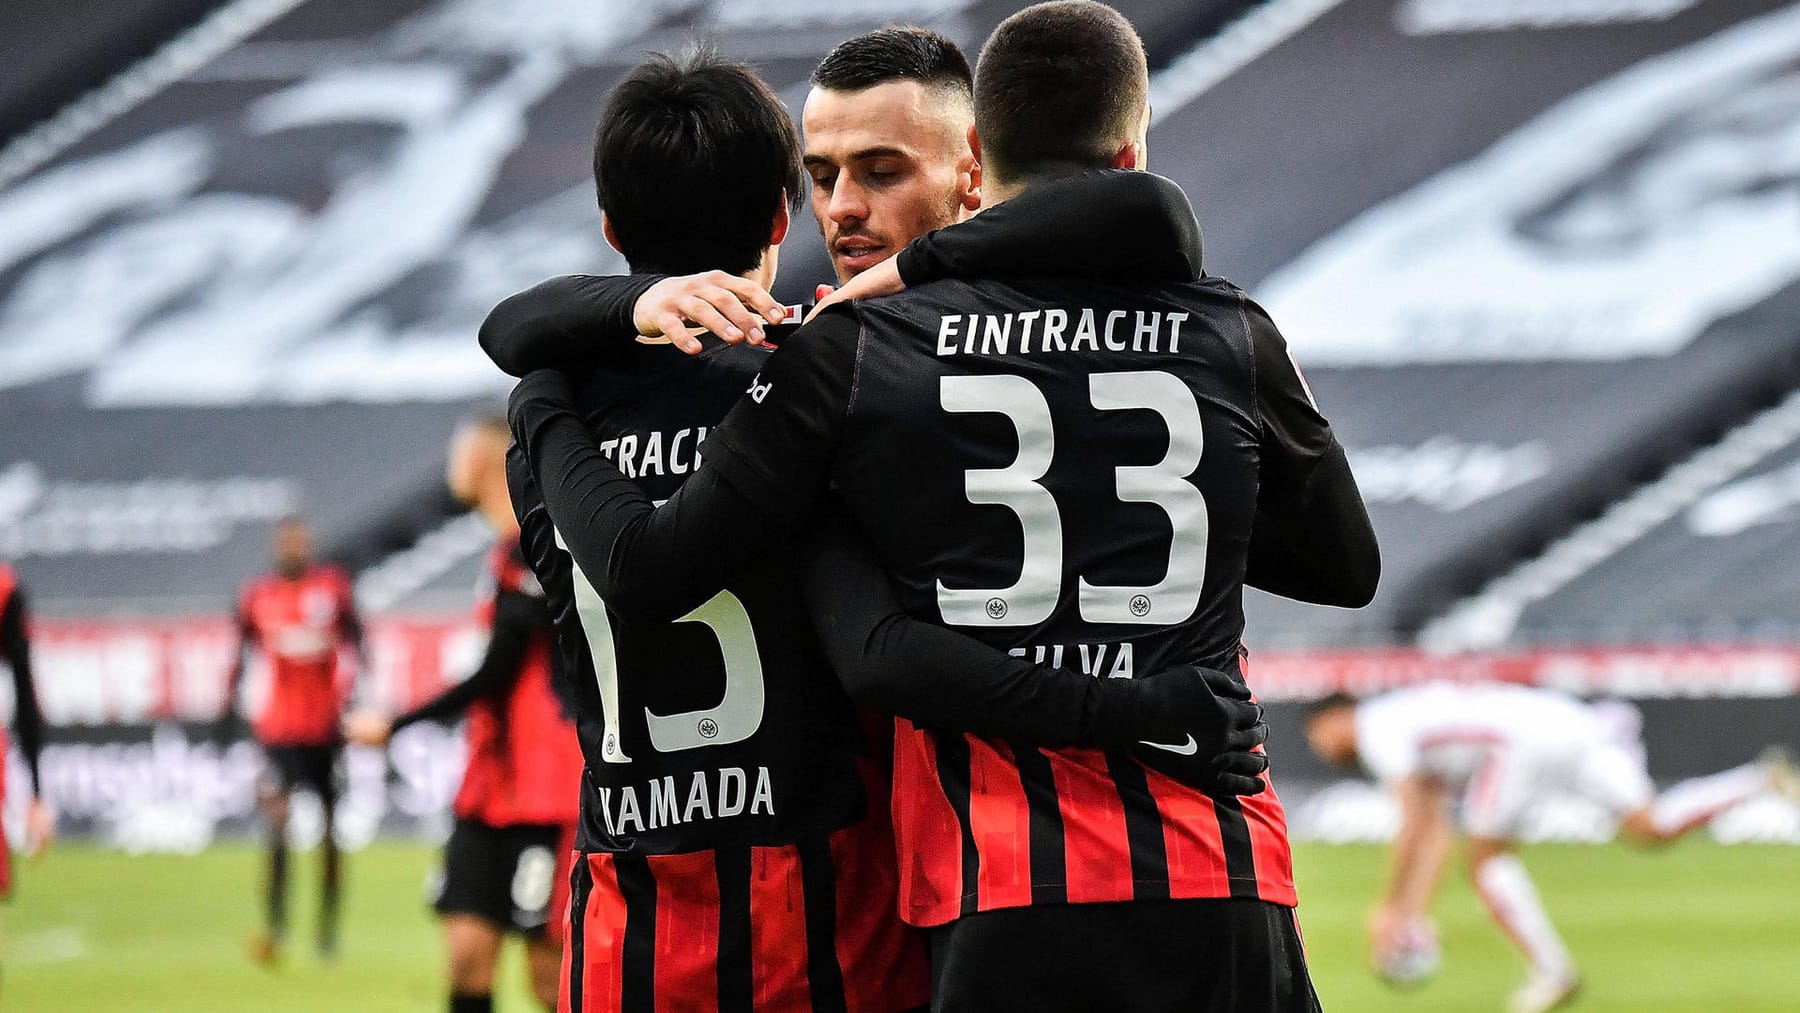 Gedenken an Hanau Eintracht Frankfurt trägt Sondertrikots vor Bayern-Spiel